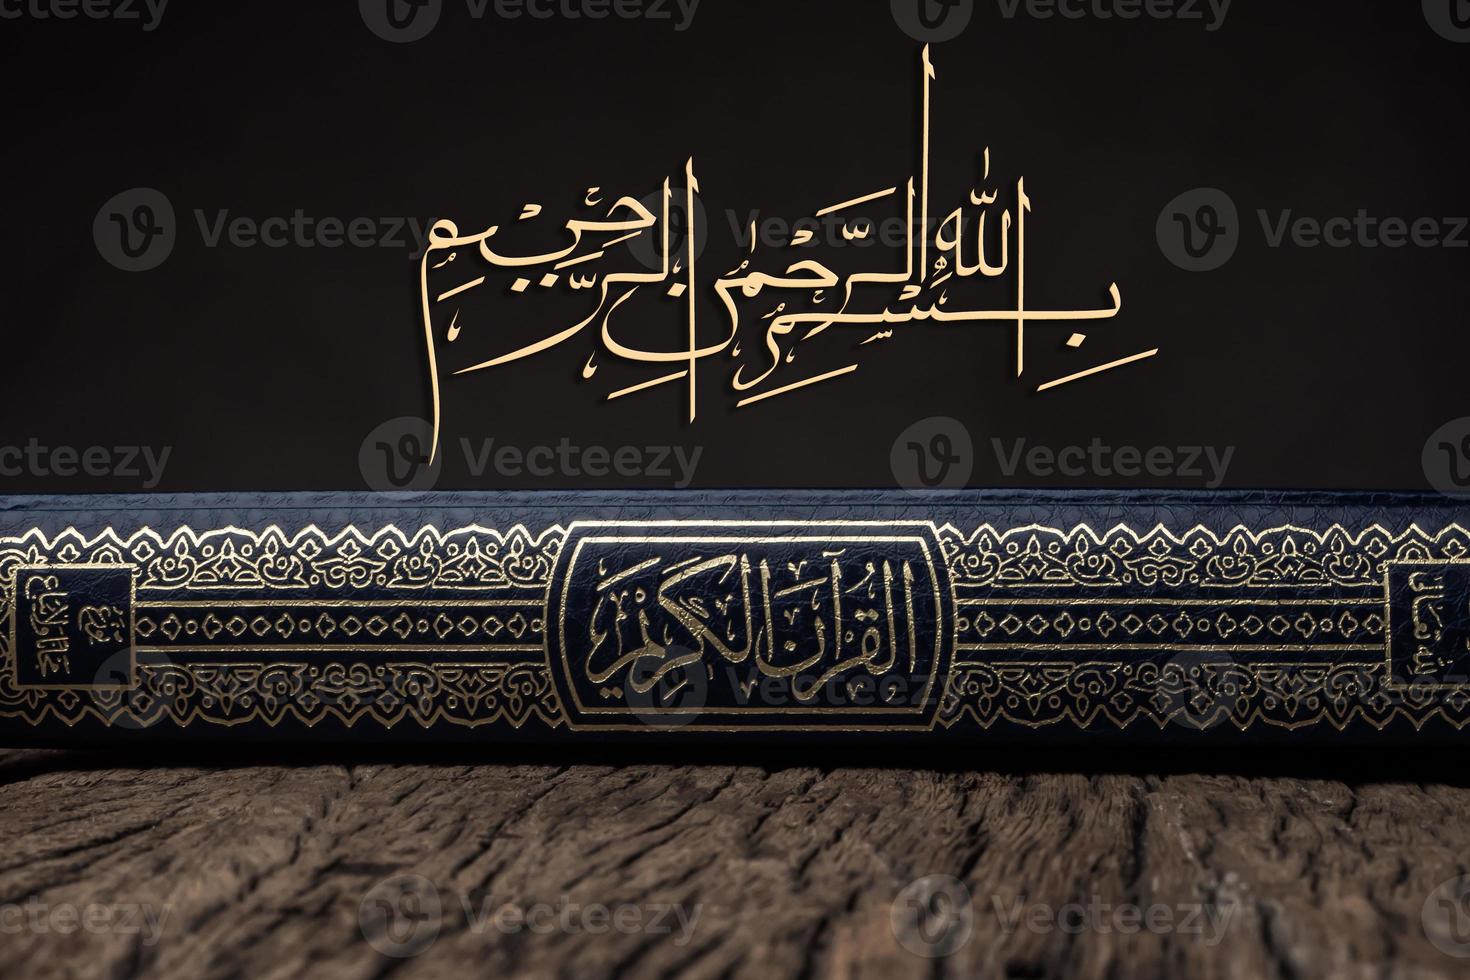 bismillah betekent in naam van allah arabische kunst met koran heilig boek van moslims openbaar item van alle moslims. foto